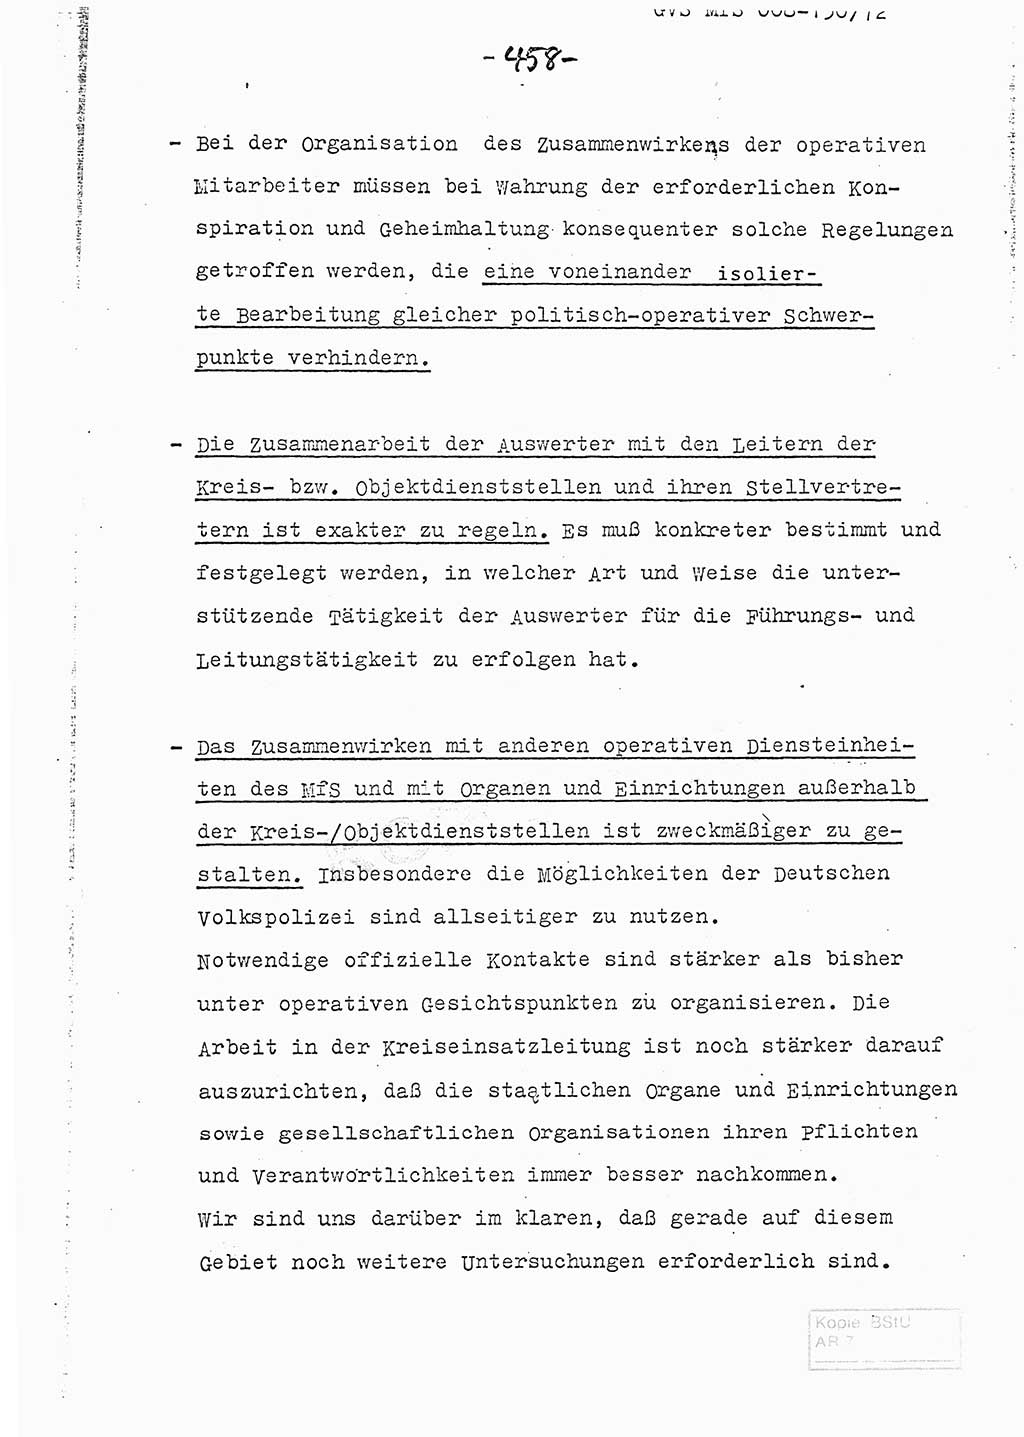 Referat (Entwurf) des Genossen Minister (Generaloberst Erich Mielke) auf der Dienstkonferenz 1972, Ministerium für Staatssicherheit (MfS) [Deutsche Demokratische Republik (DDR)], Der Minister, Geheime Verschlußsache (GVS) 008-150/72, Berlin 25.2.1972, Seite 458 (Ref. Entw. DK MfS DDR Min. GVS 008-150/72 1972, S. 458)